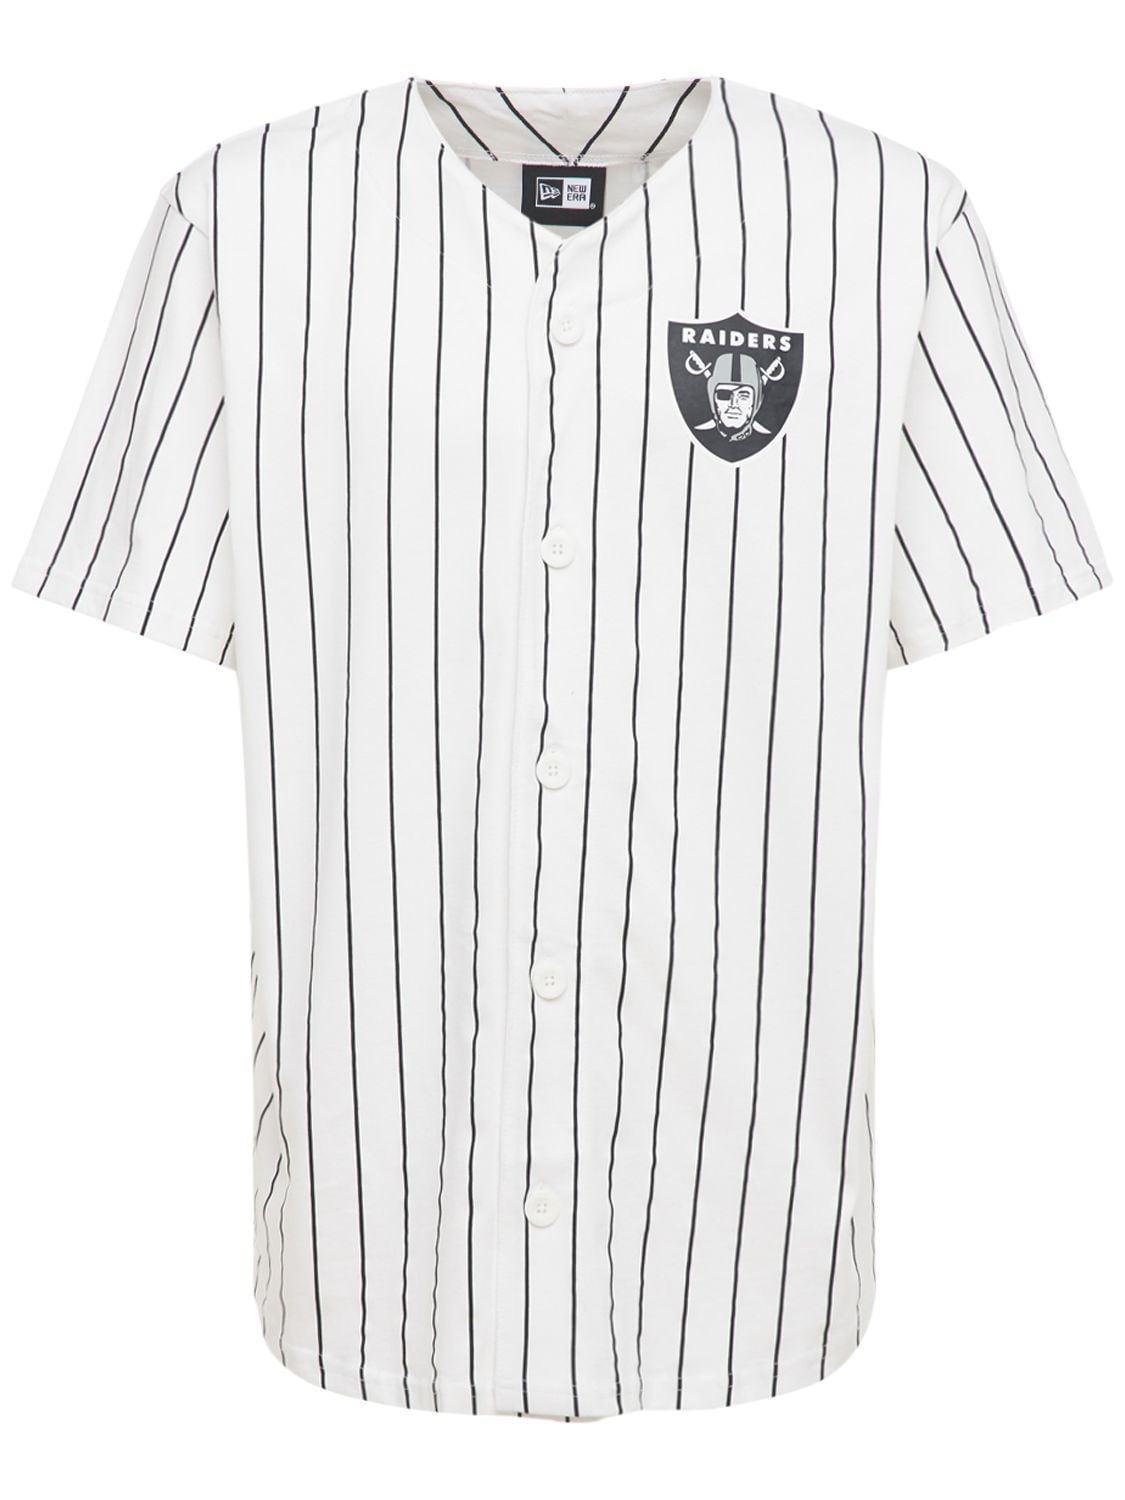 La Raiders Pinstripe Baseball T-shirt